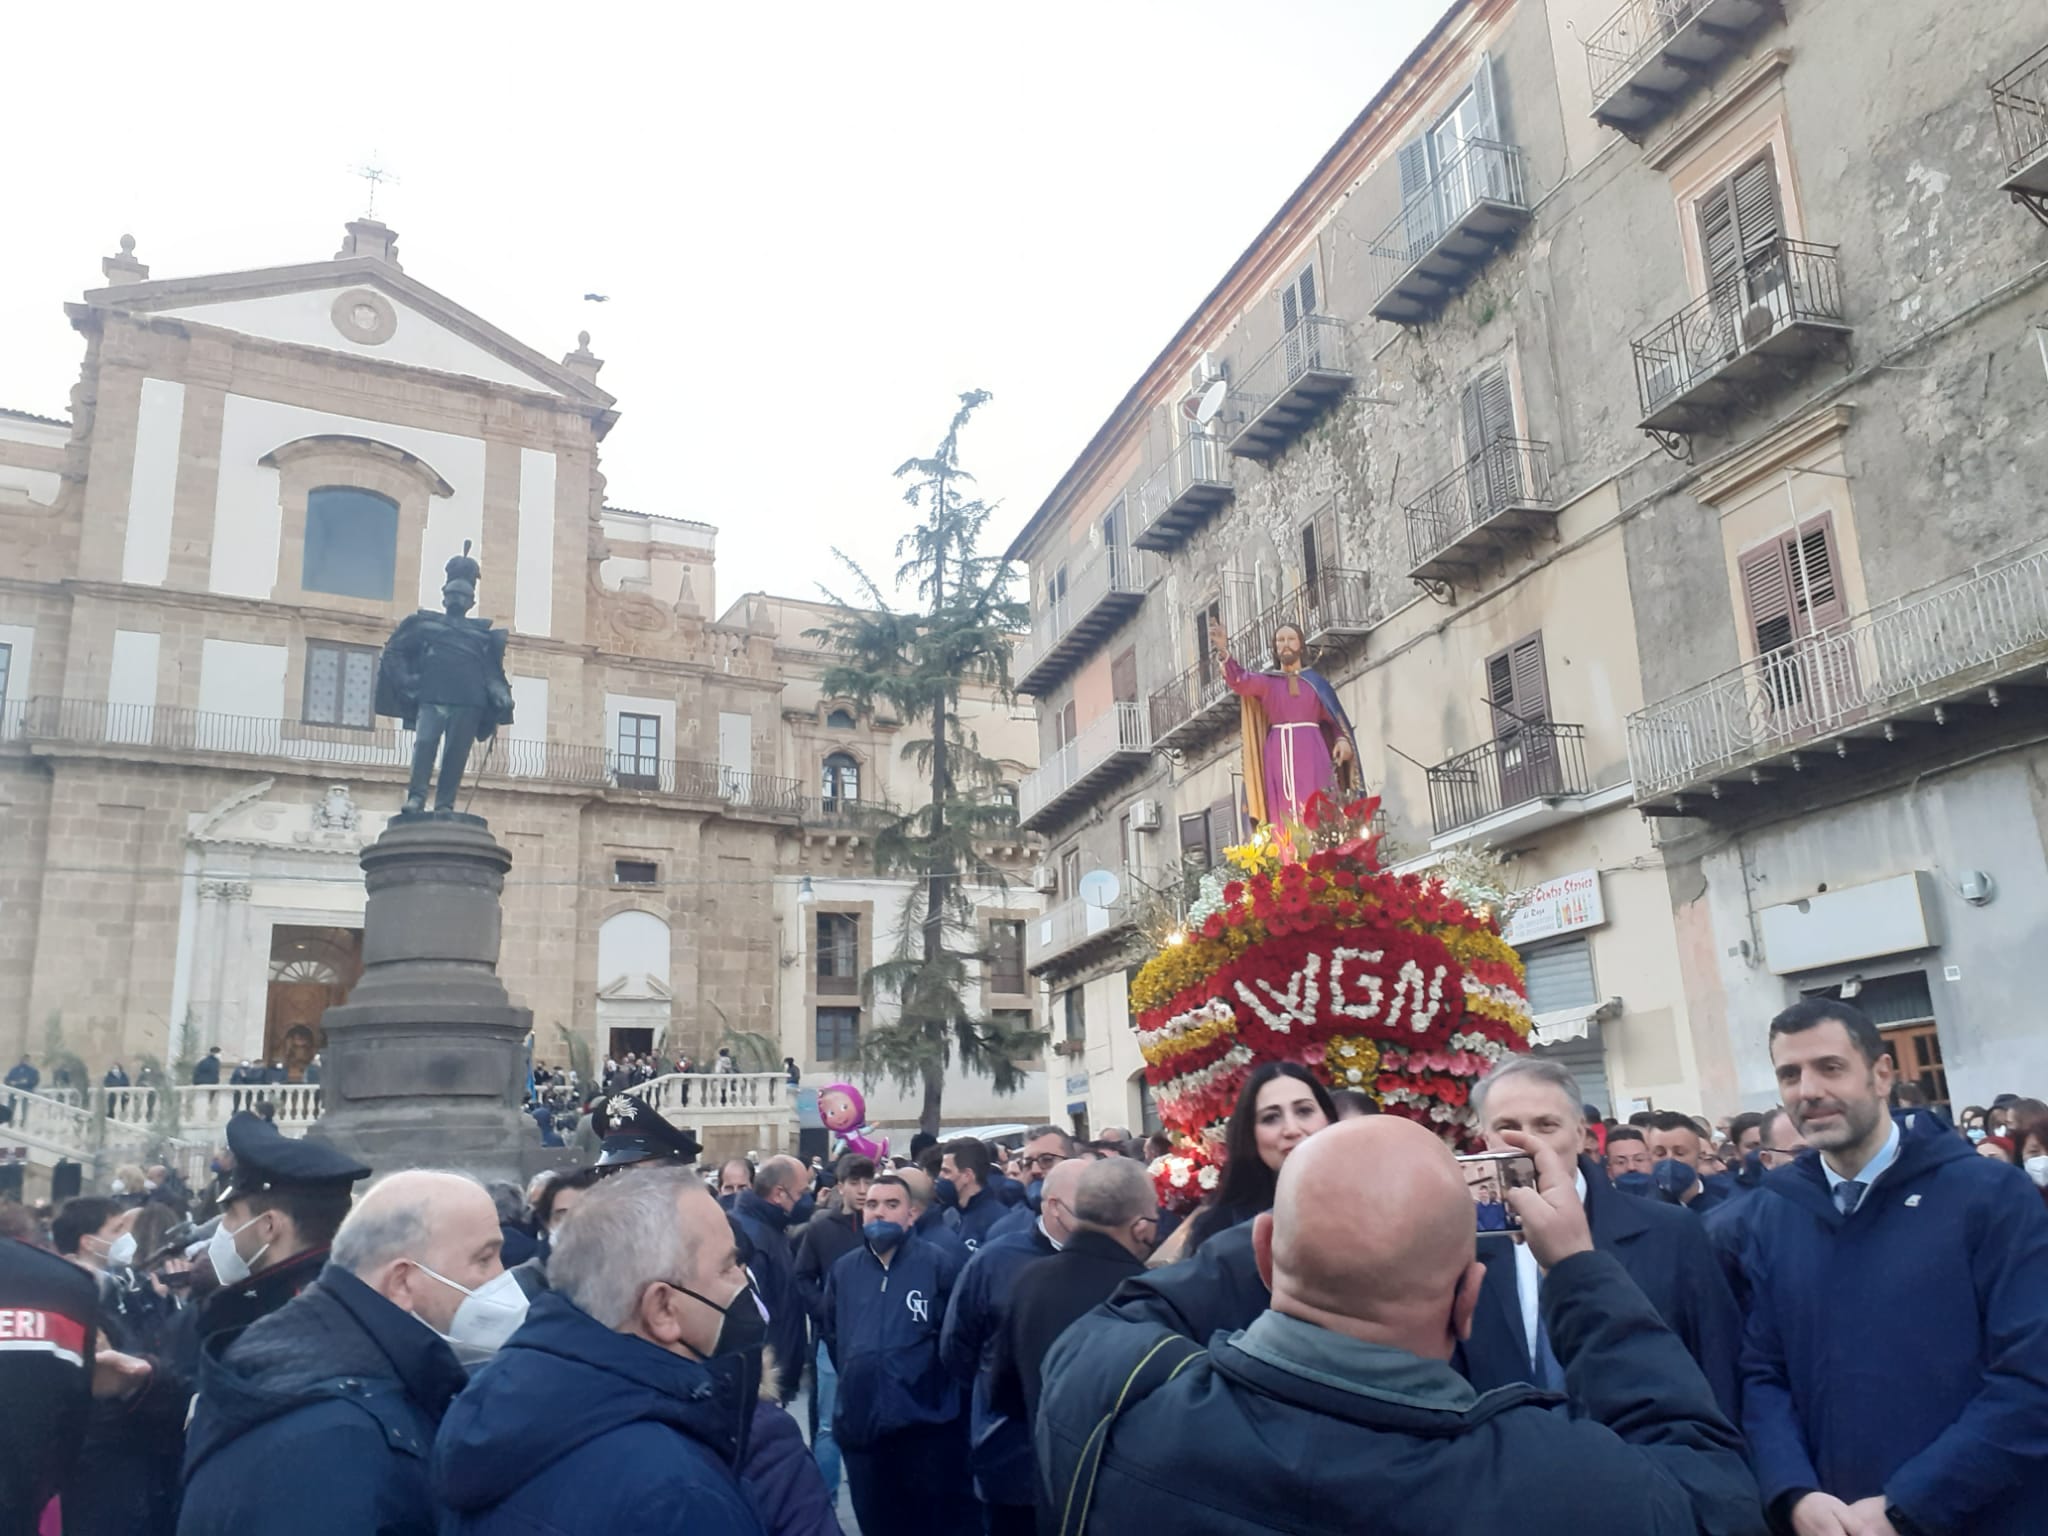 Caltanissetta, Settimana Santa: processione del Gesù Nazareno vissuta nel silenzio e nella preghiera